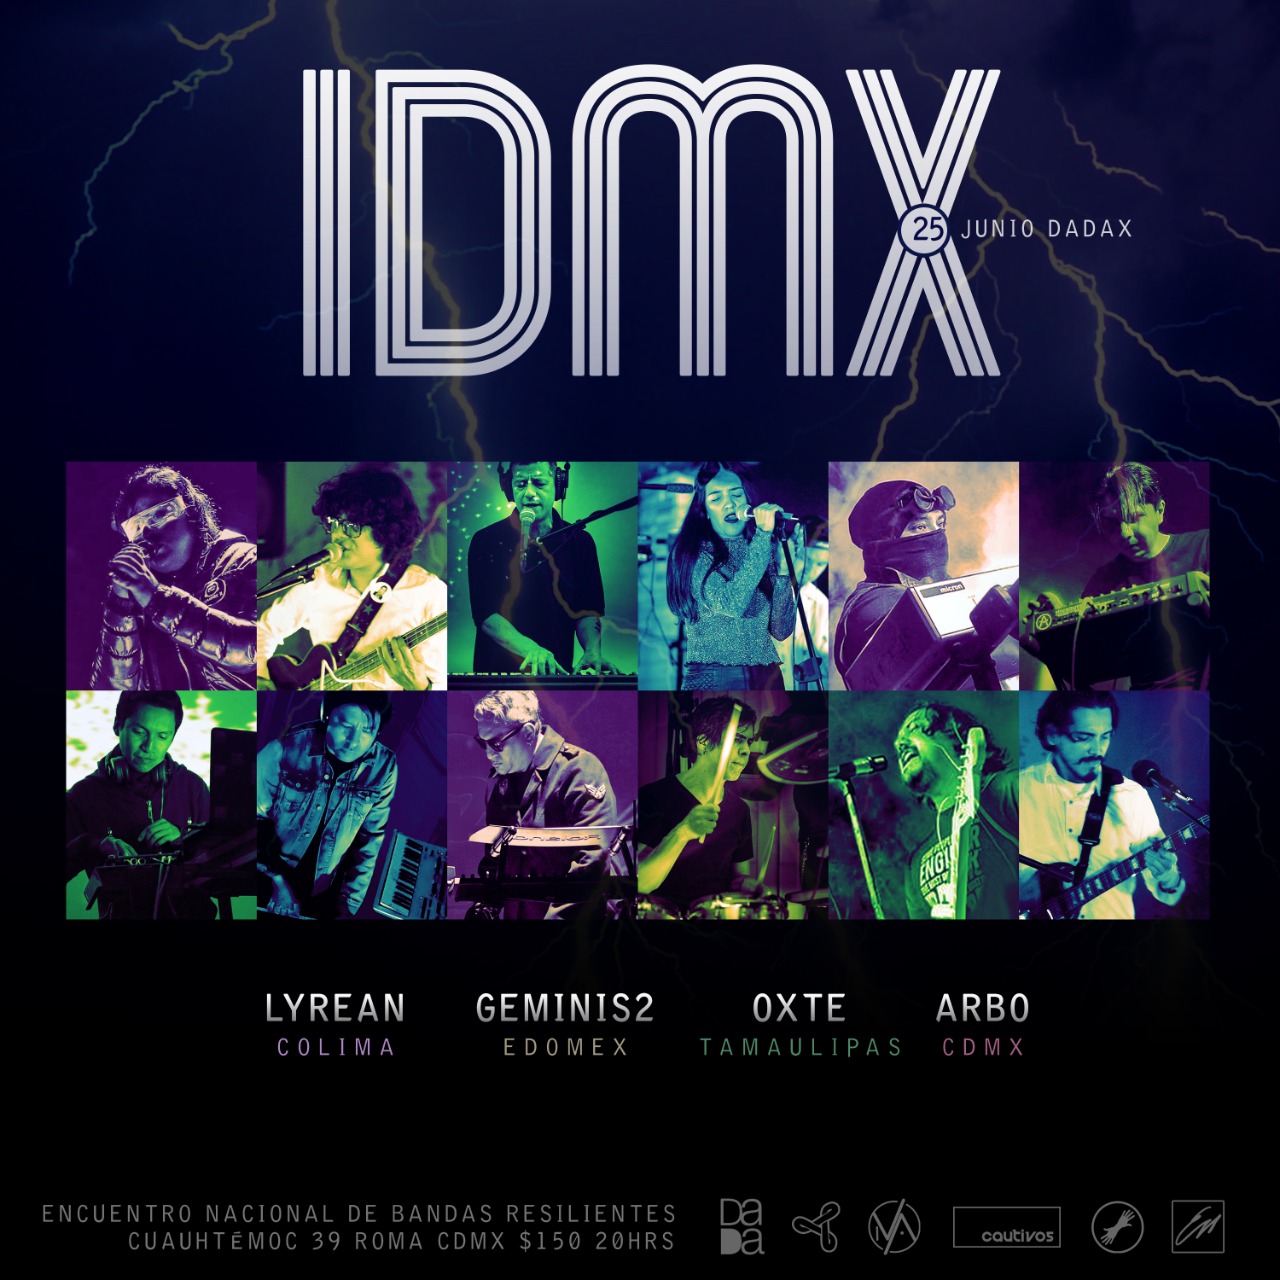 IDMX